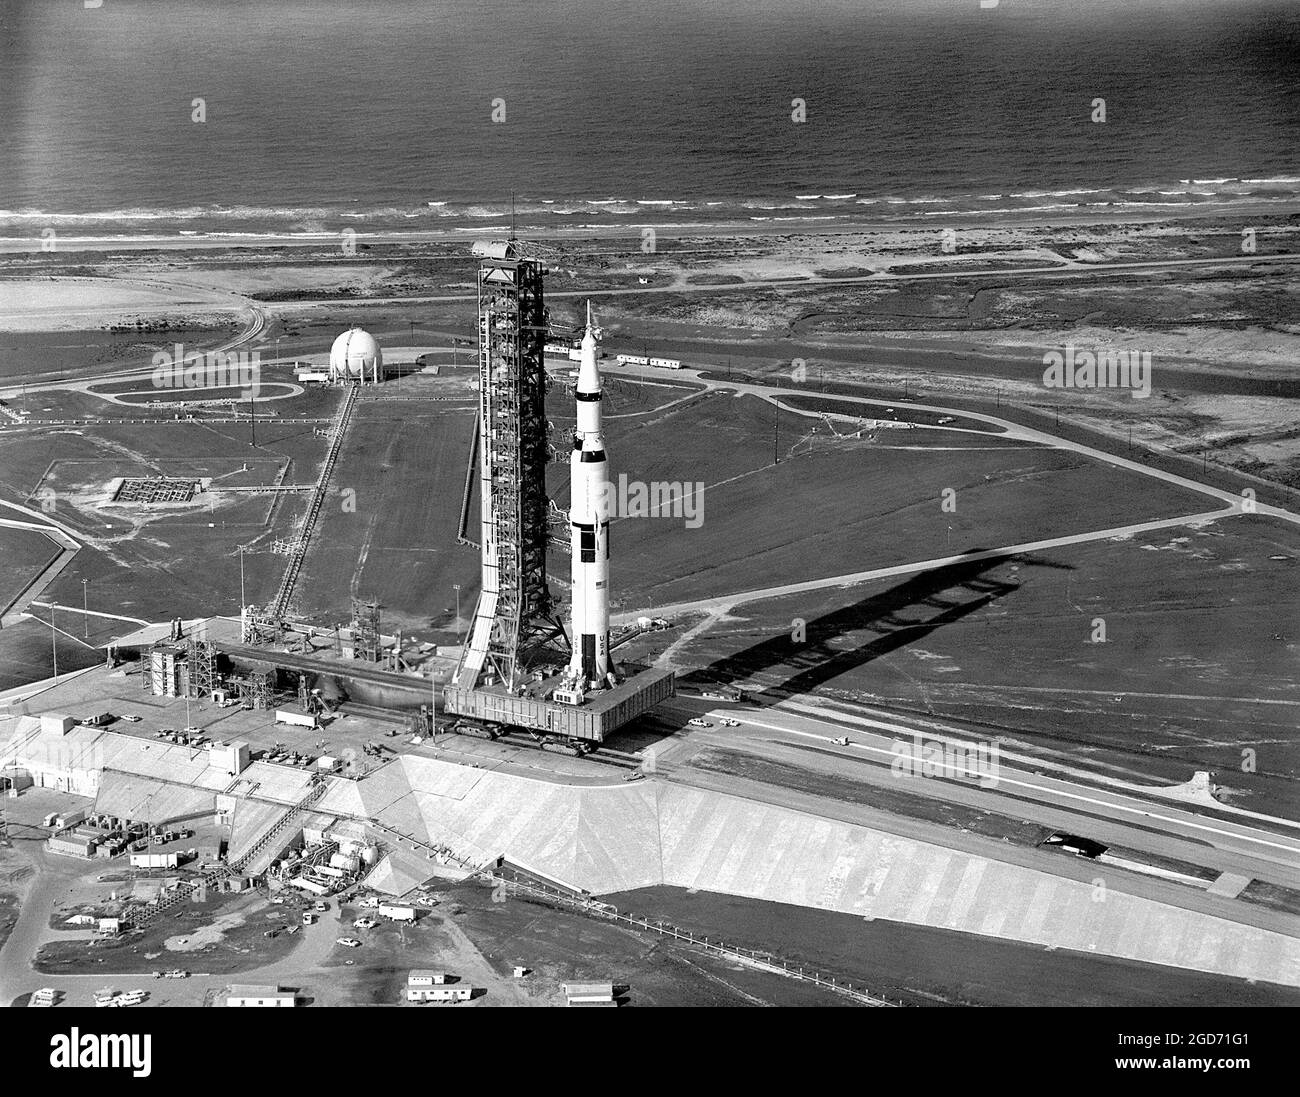 Il razzo Saturn V sul suo trasportatore è stato portato alla rampa di lancio a Cape Canaveral in Florida. Il razzo è l'Apollo 11, che per la prima volta sbarcò uomini sulla luna. Foto Stock